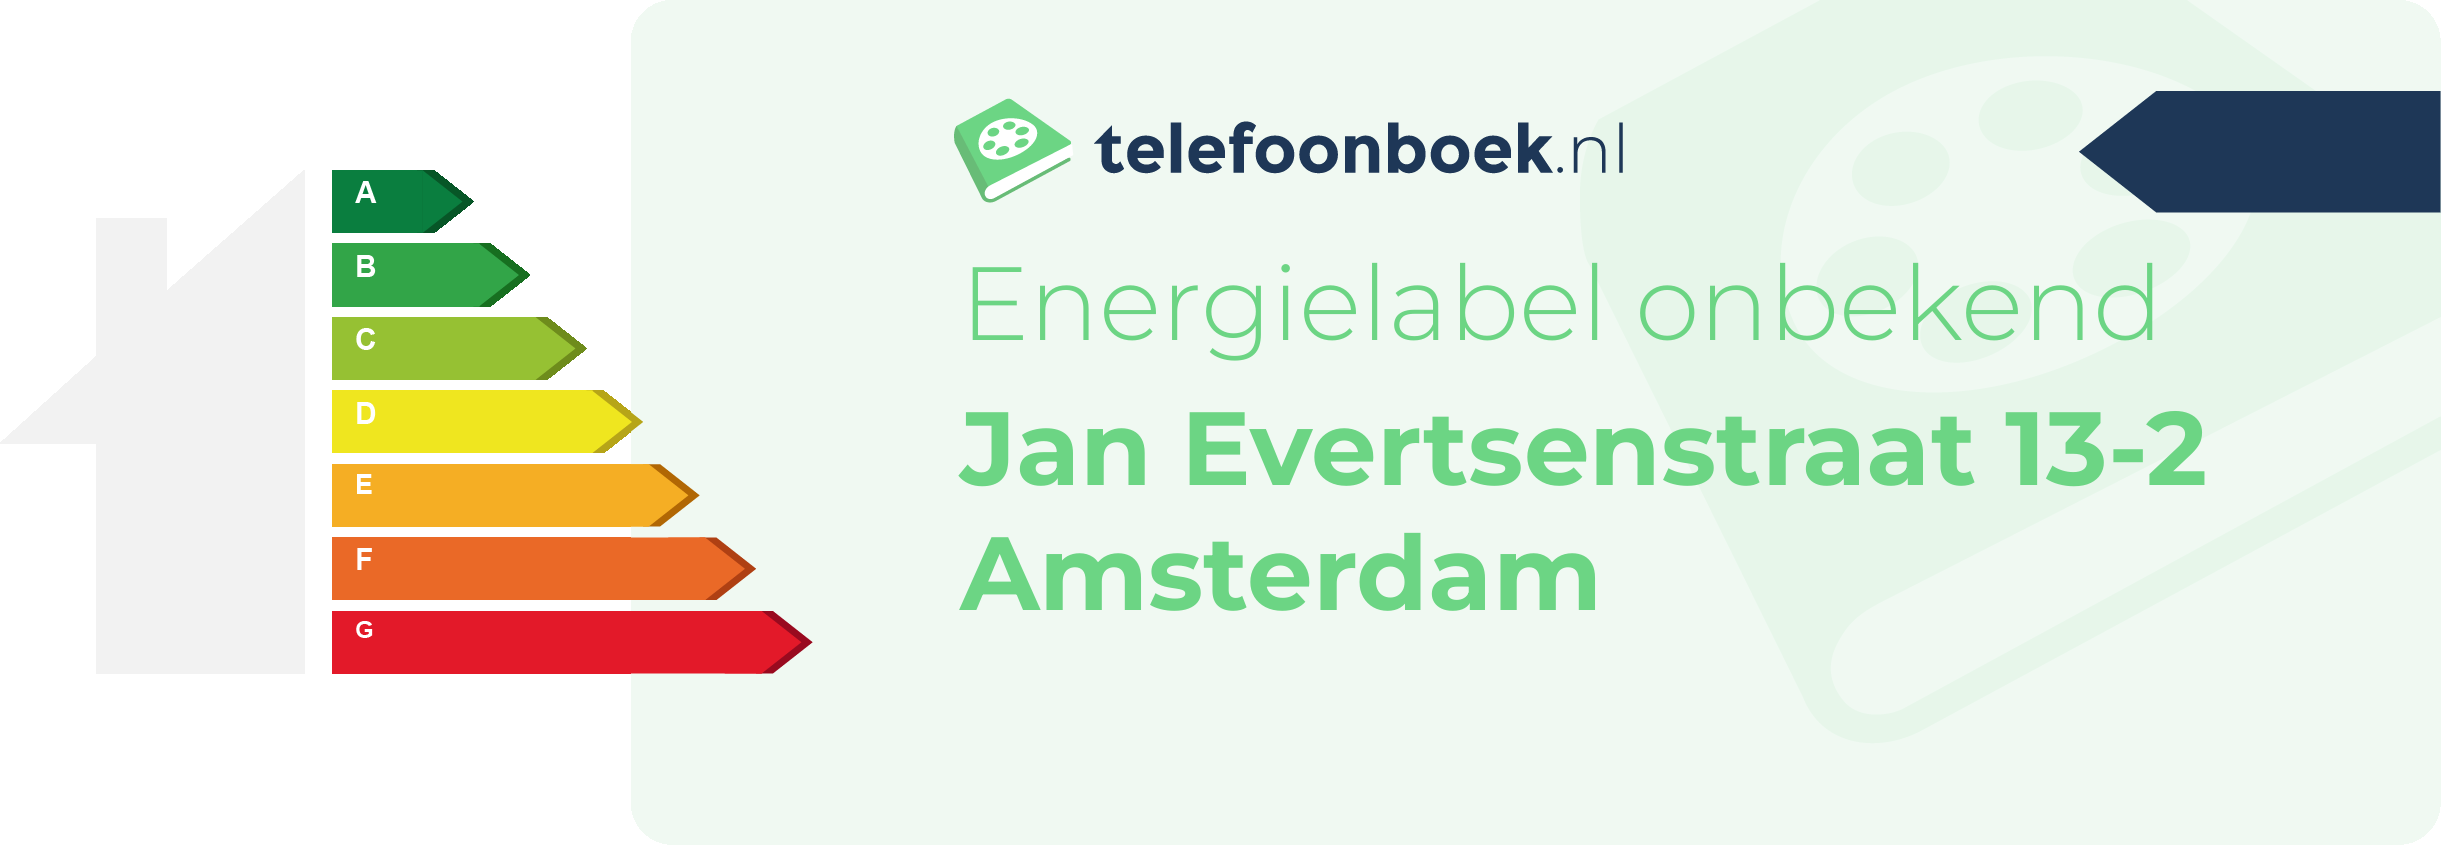 Energielabel Jan Evertsenstraat 13-2 Amsterdam